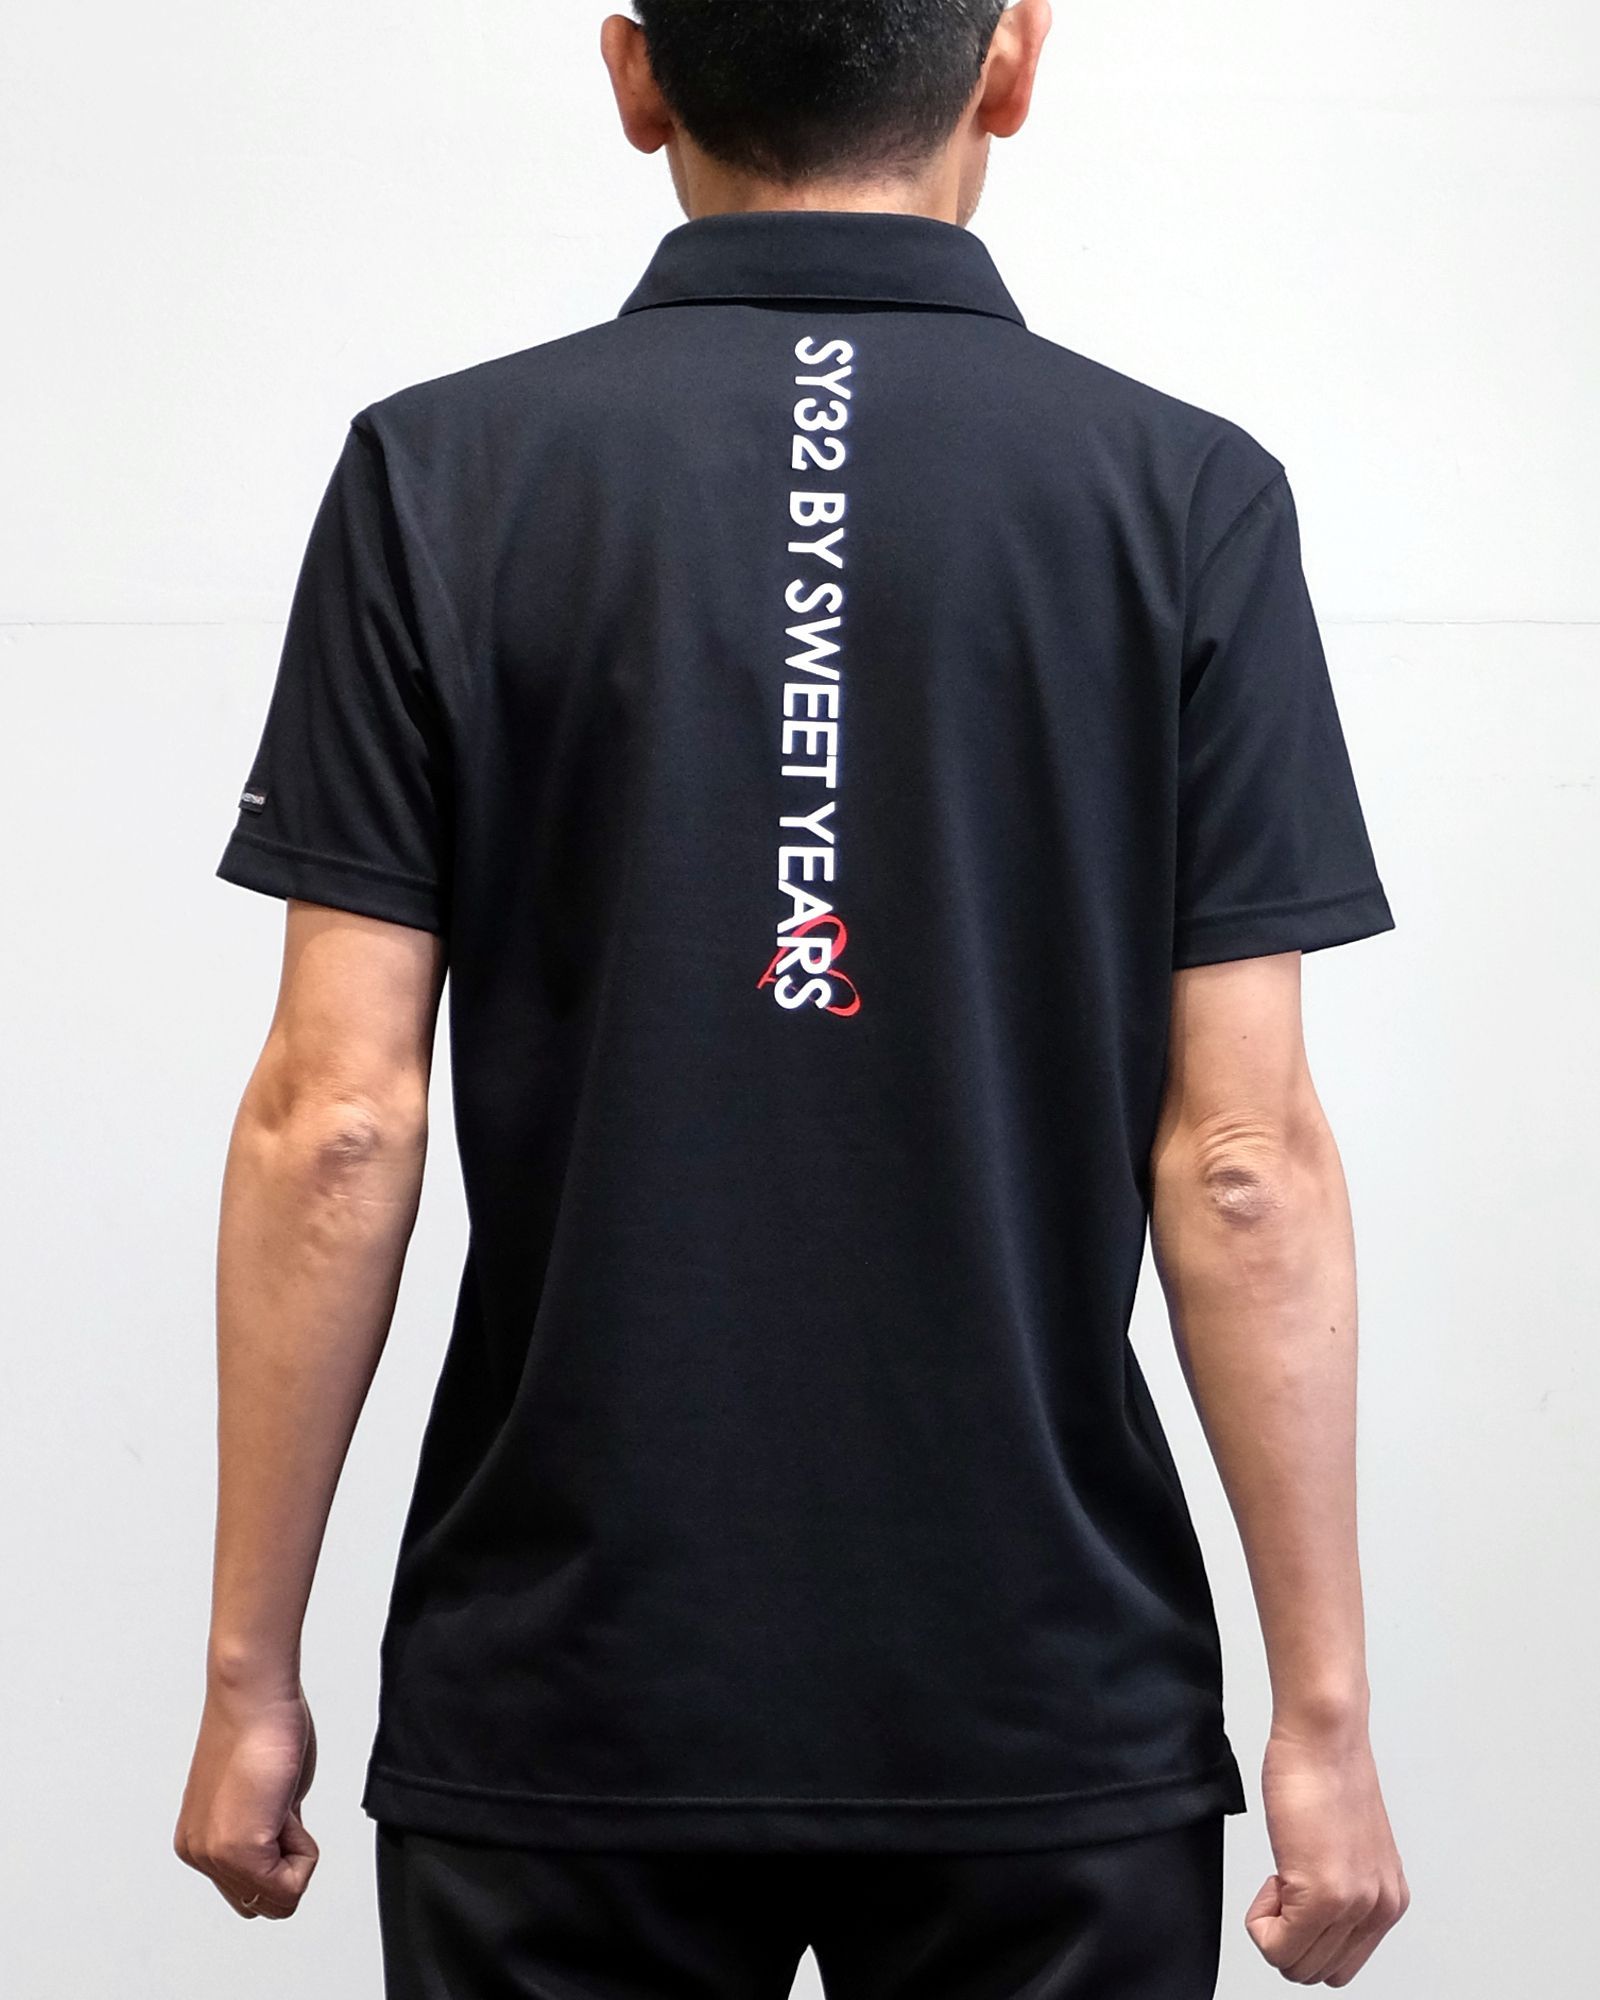 【M 残り1】【即日発送可】【GOLF】スキッパー ロゴシャツ (BLACK) SYG-2225 - M